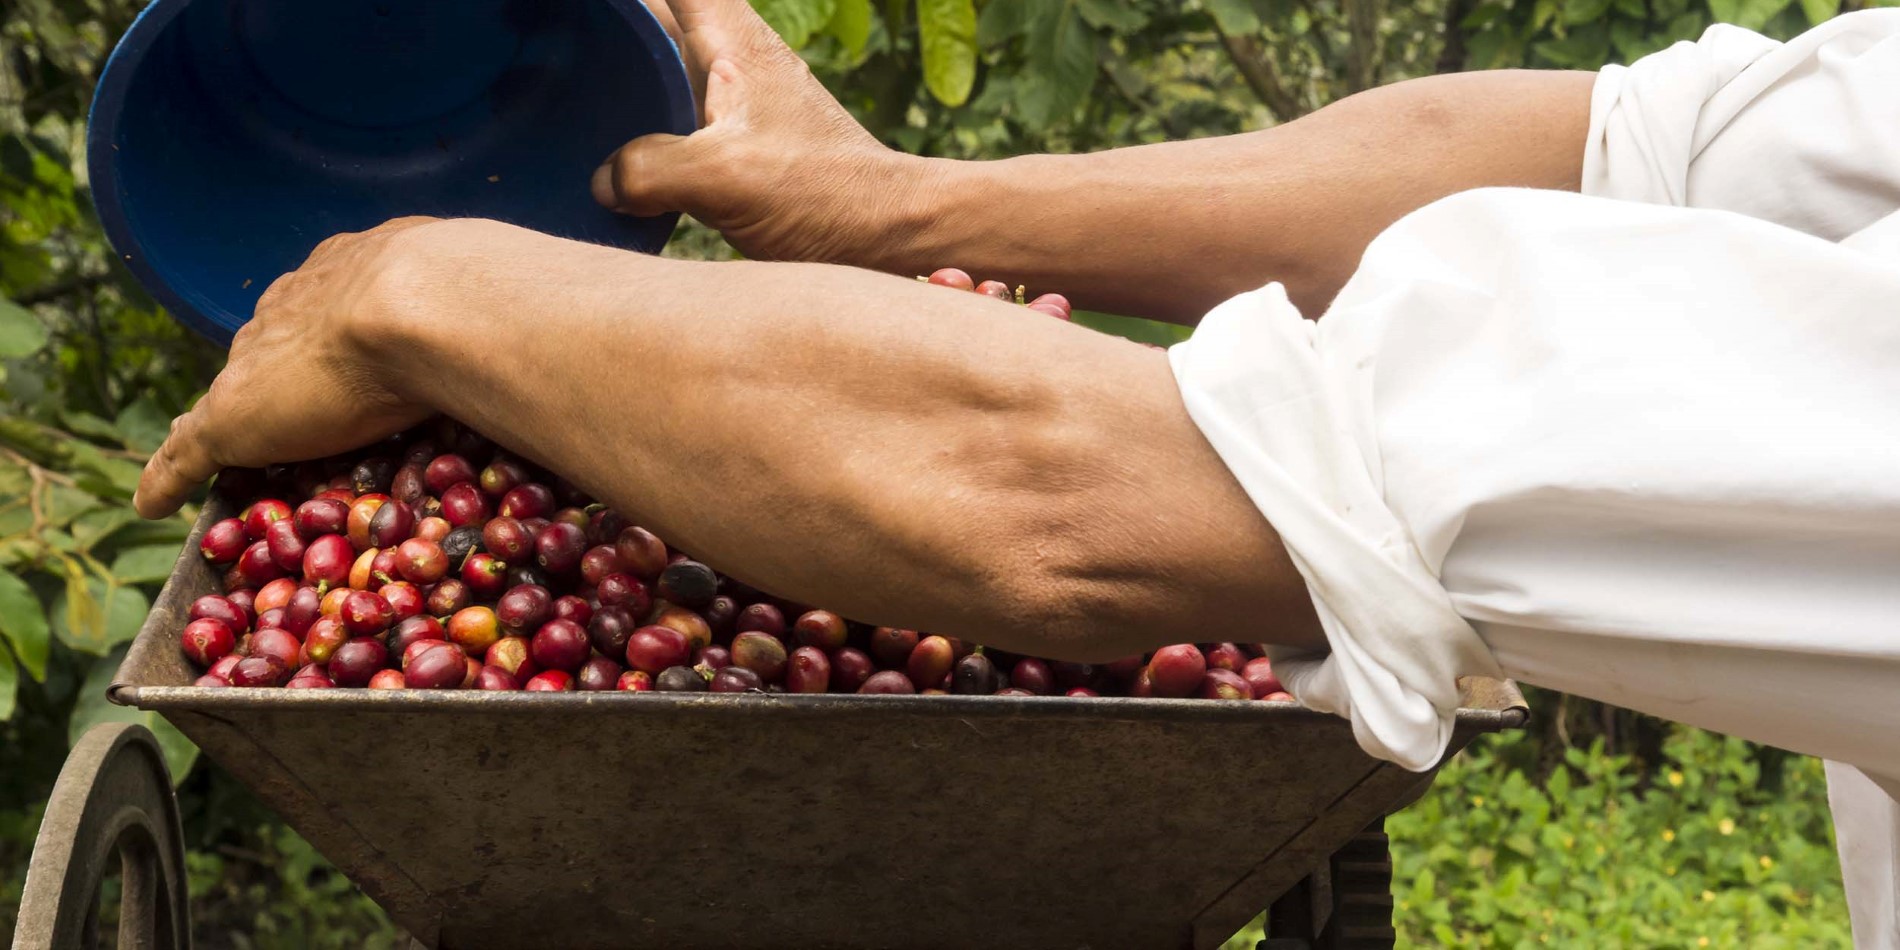 Visitez une plantation de café pour découvrir comment ces petites baies rouges deviennent la boisson la plus appréciée dans le monde.